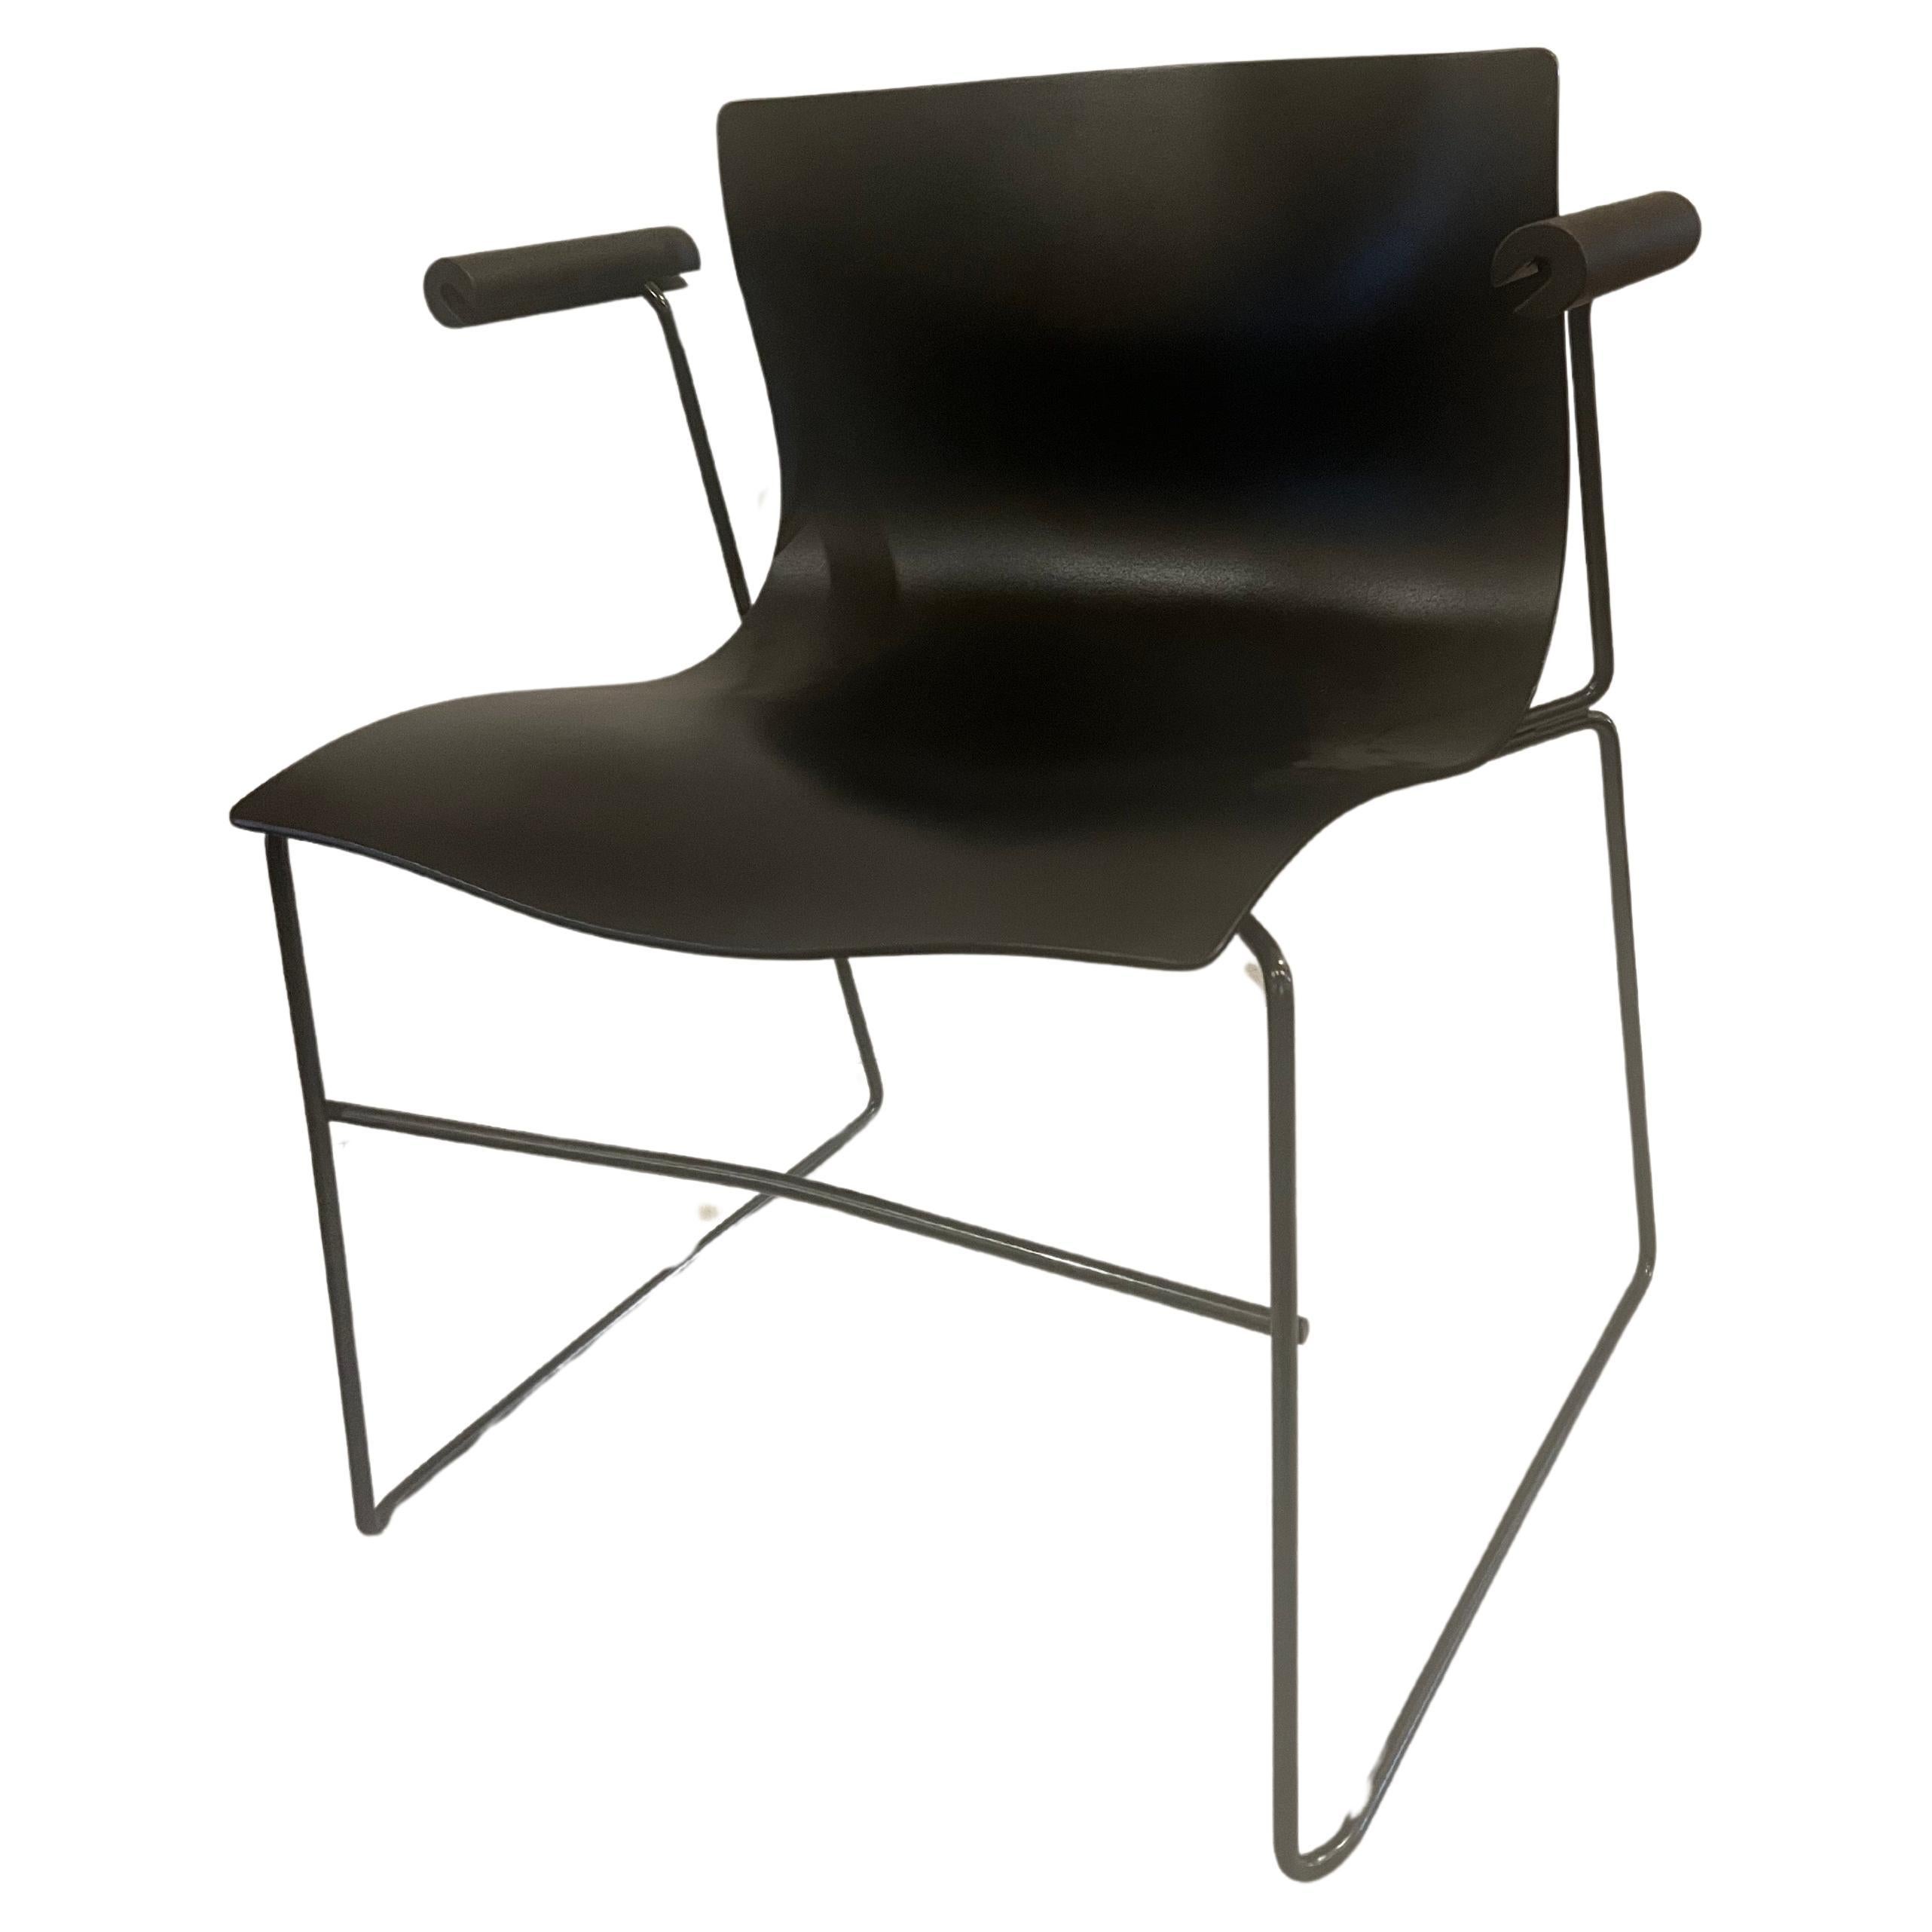 Une superbe paire de fauteuils conçus par Massimo Vignelli pour Condoll, circa 1983, pour le studio Knoll en très bon état, noir sur noir les sièges sont très propres ces fauteuils sont agréables et confortables. Ces chaises sont empilables pour